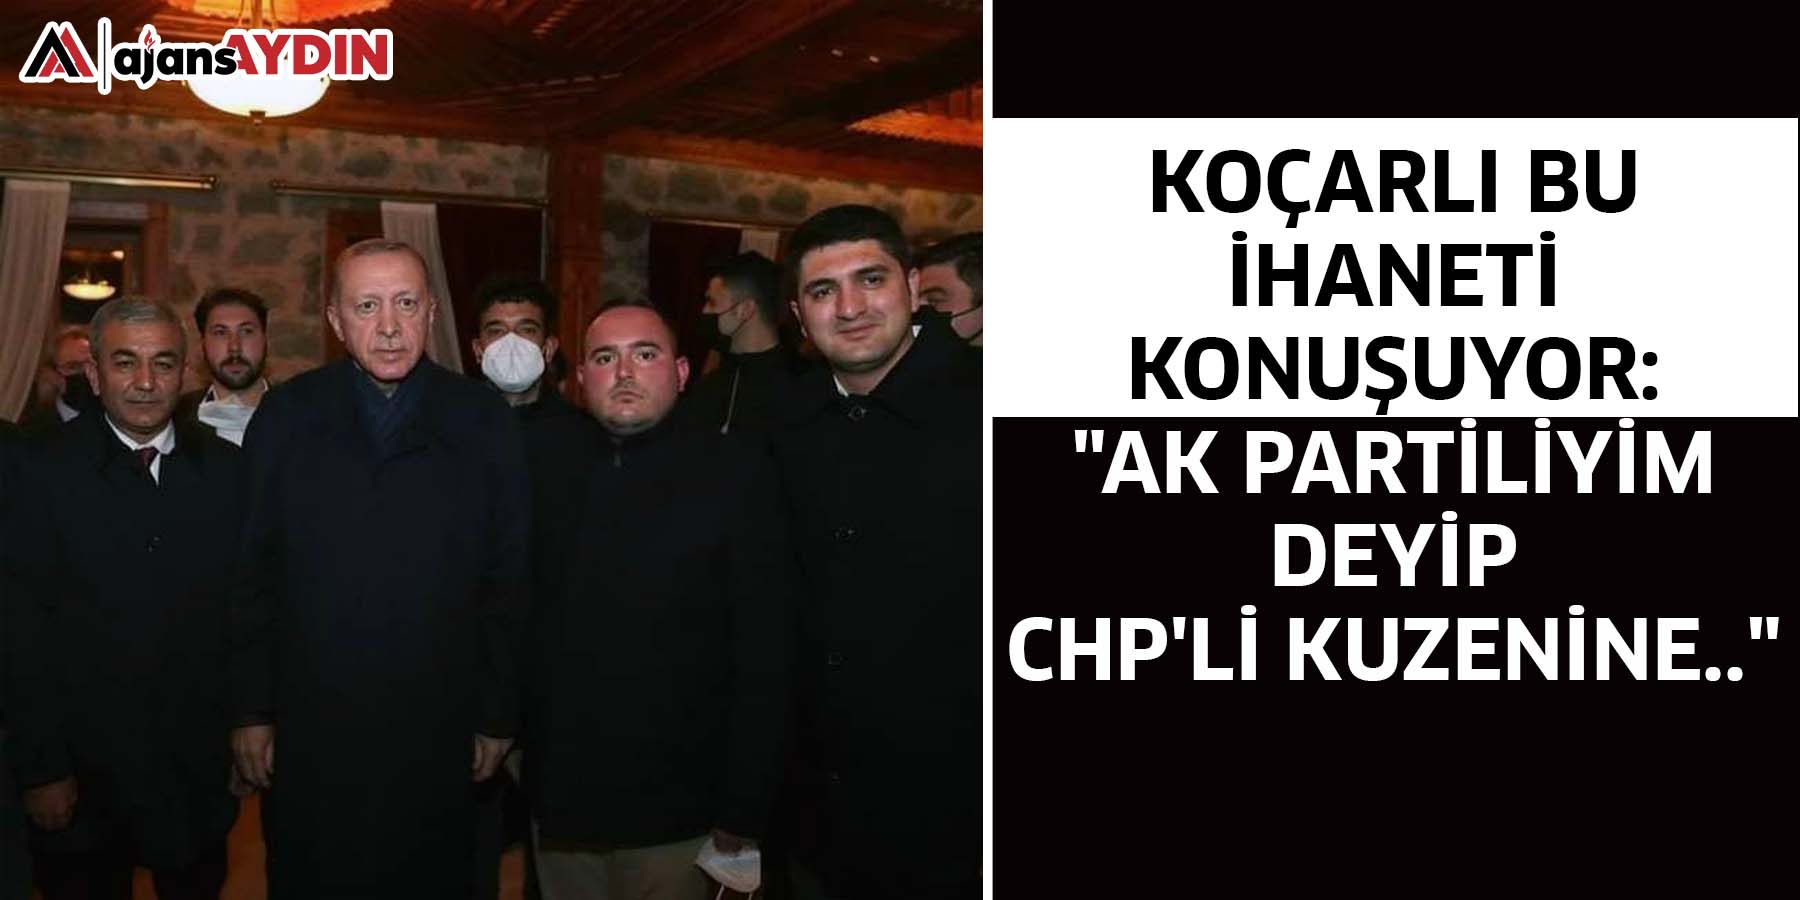 Koçarlı bu  ihaneti konuşuyor:  "AK Partiliyim deyip  CHP'li kuzenine.."